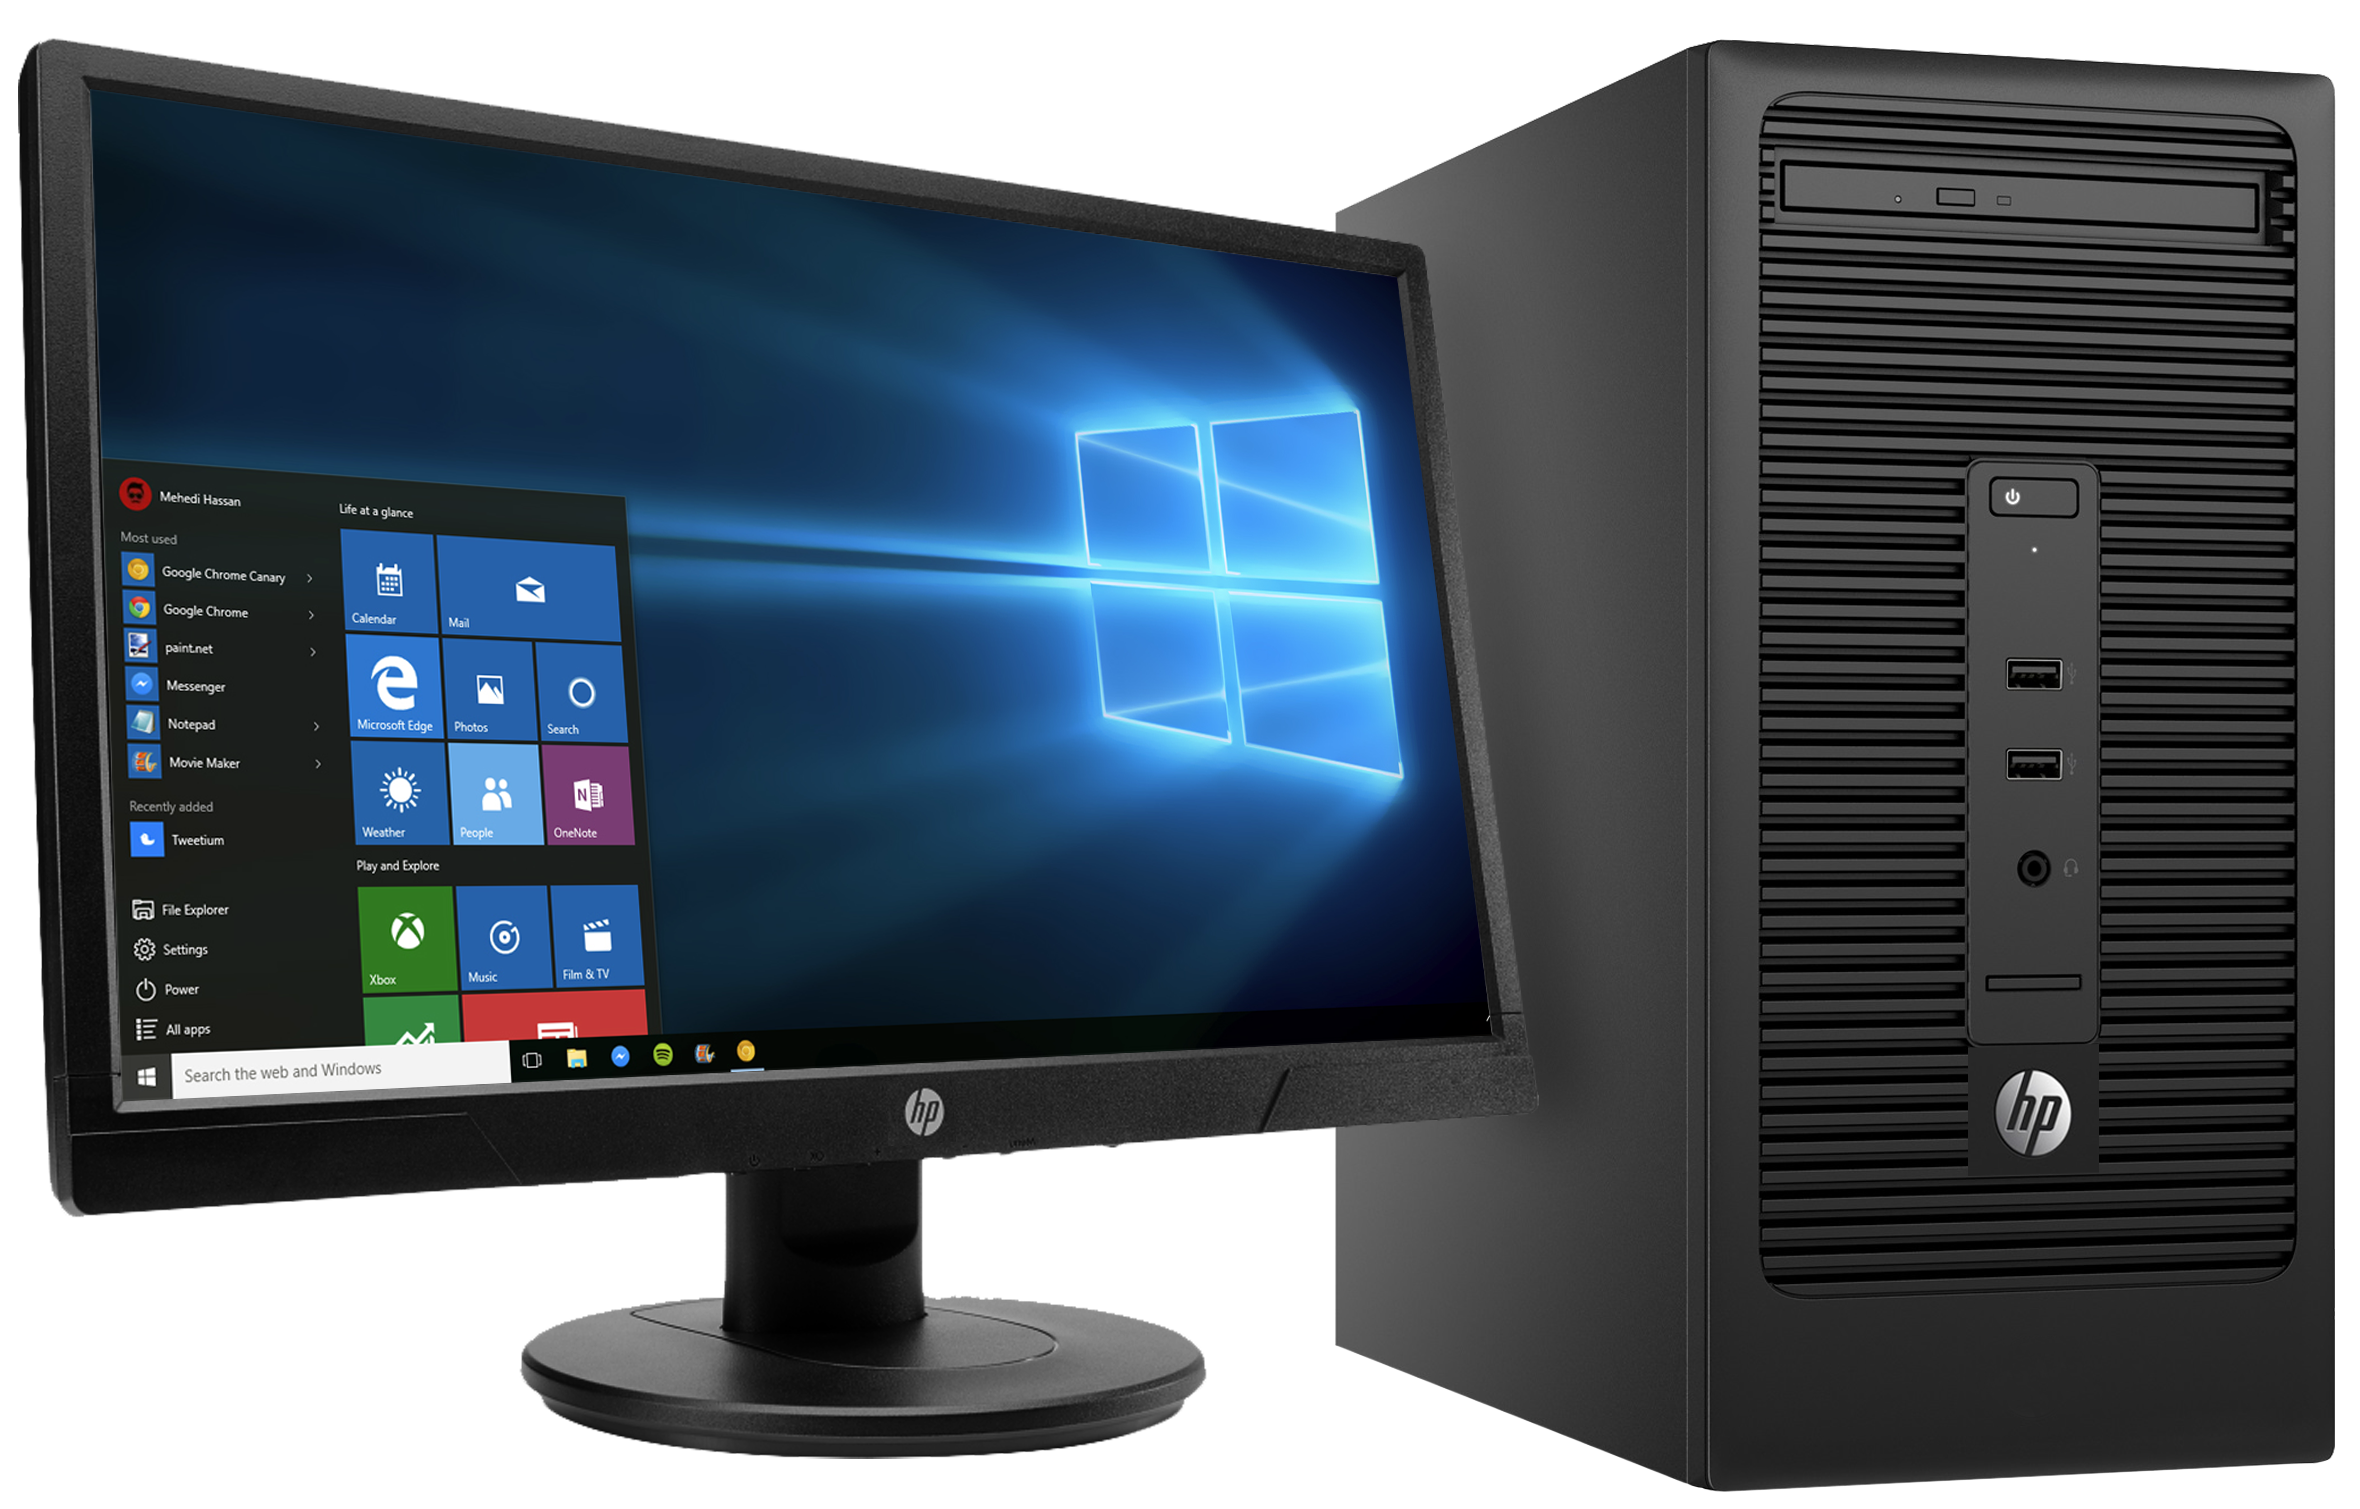 Desktop Computer Download Free Transparent Image HQ PNG Image